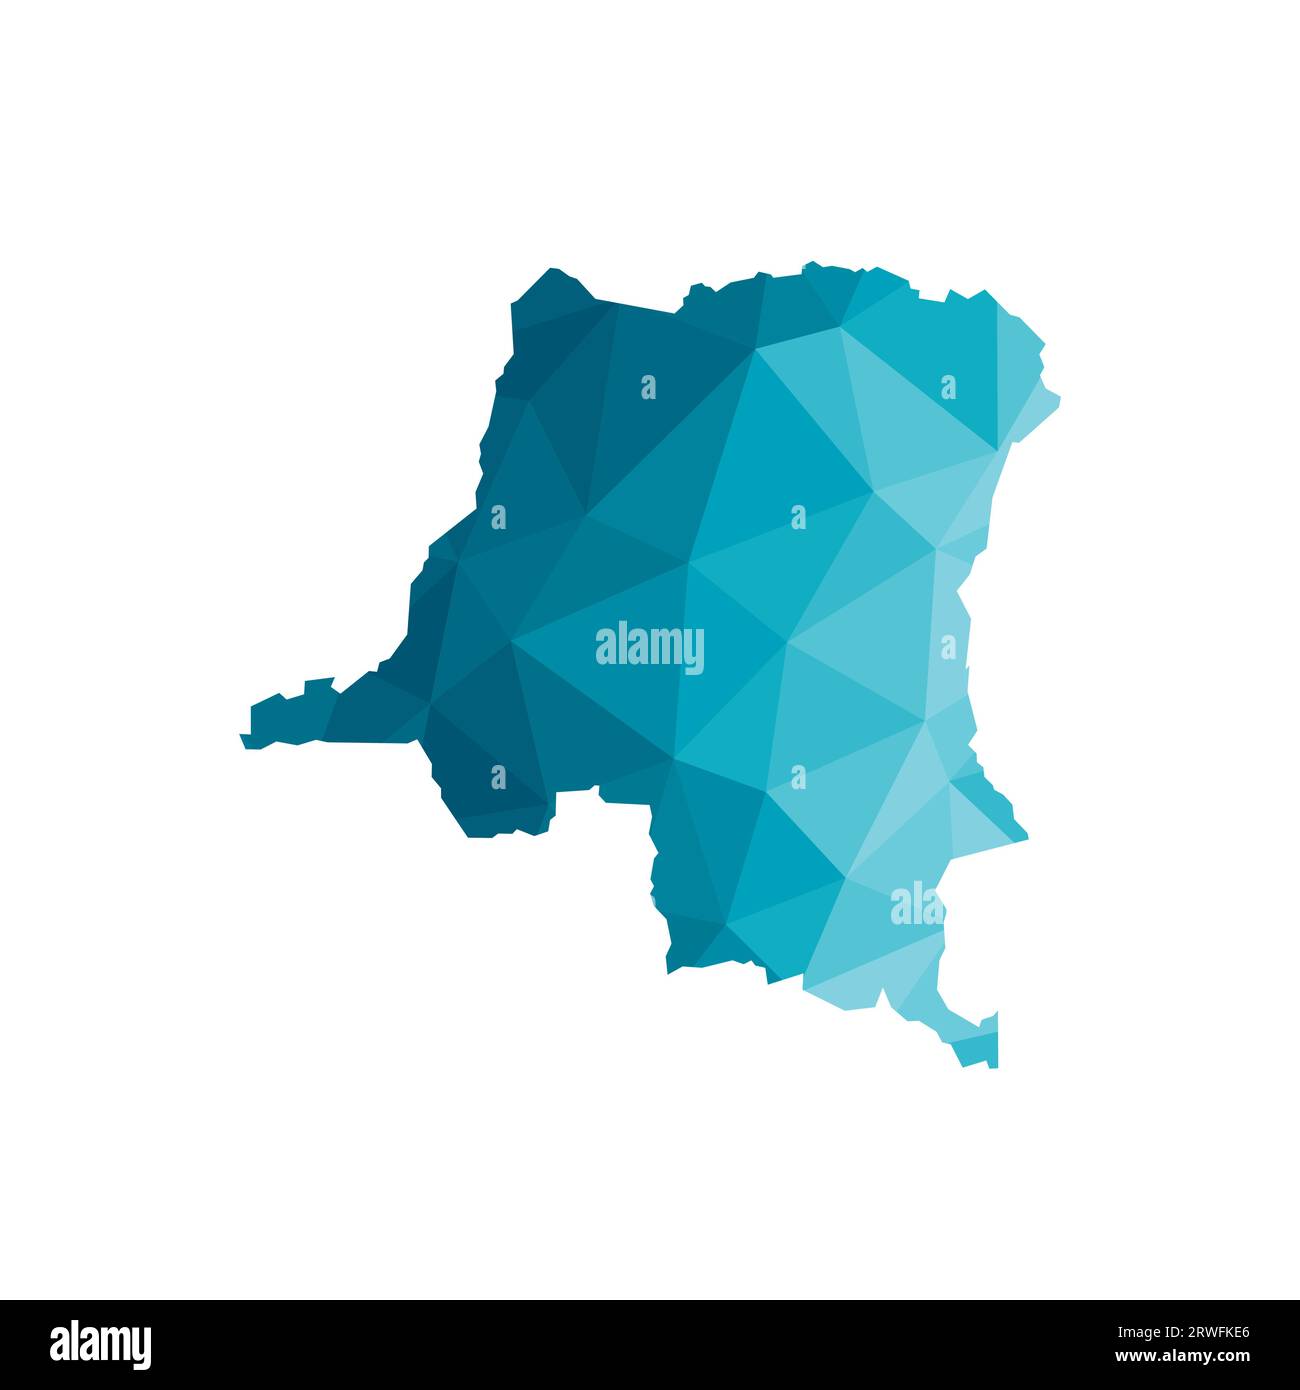 Icône d'illustration isolée vectorielle avec silhouette bleue simplifiée de la carte de la République démocratique du Congo. Style géométrique polygonal, forme triangulaire Illustration de Vecteur